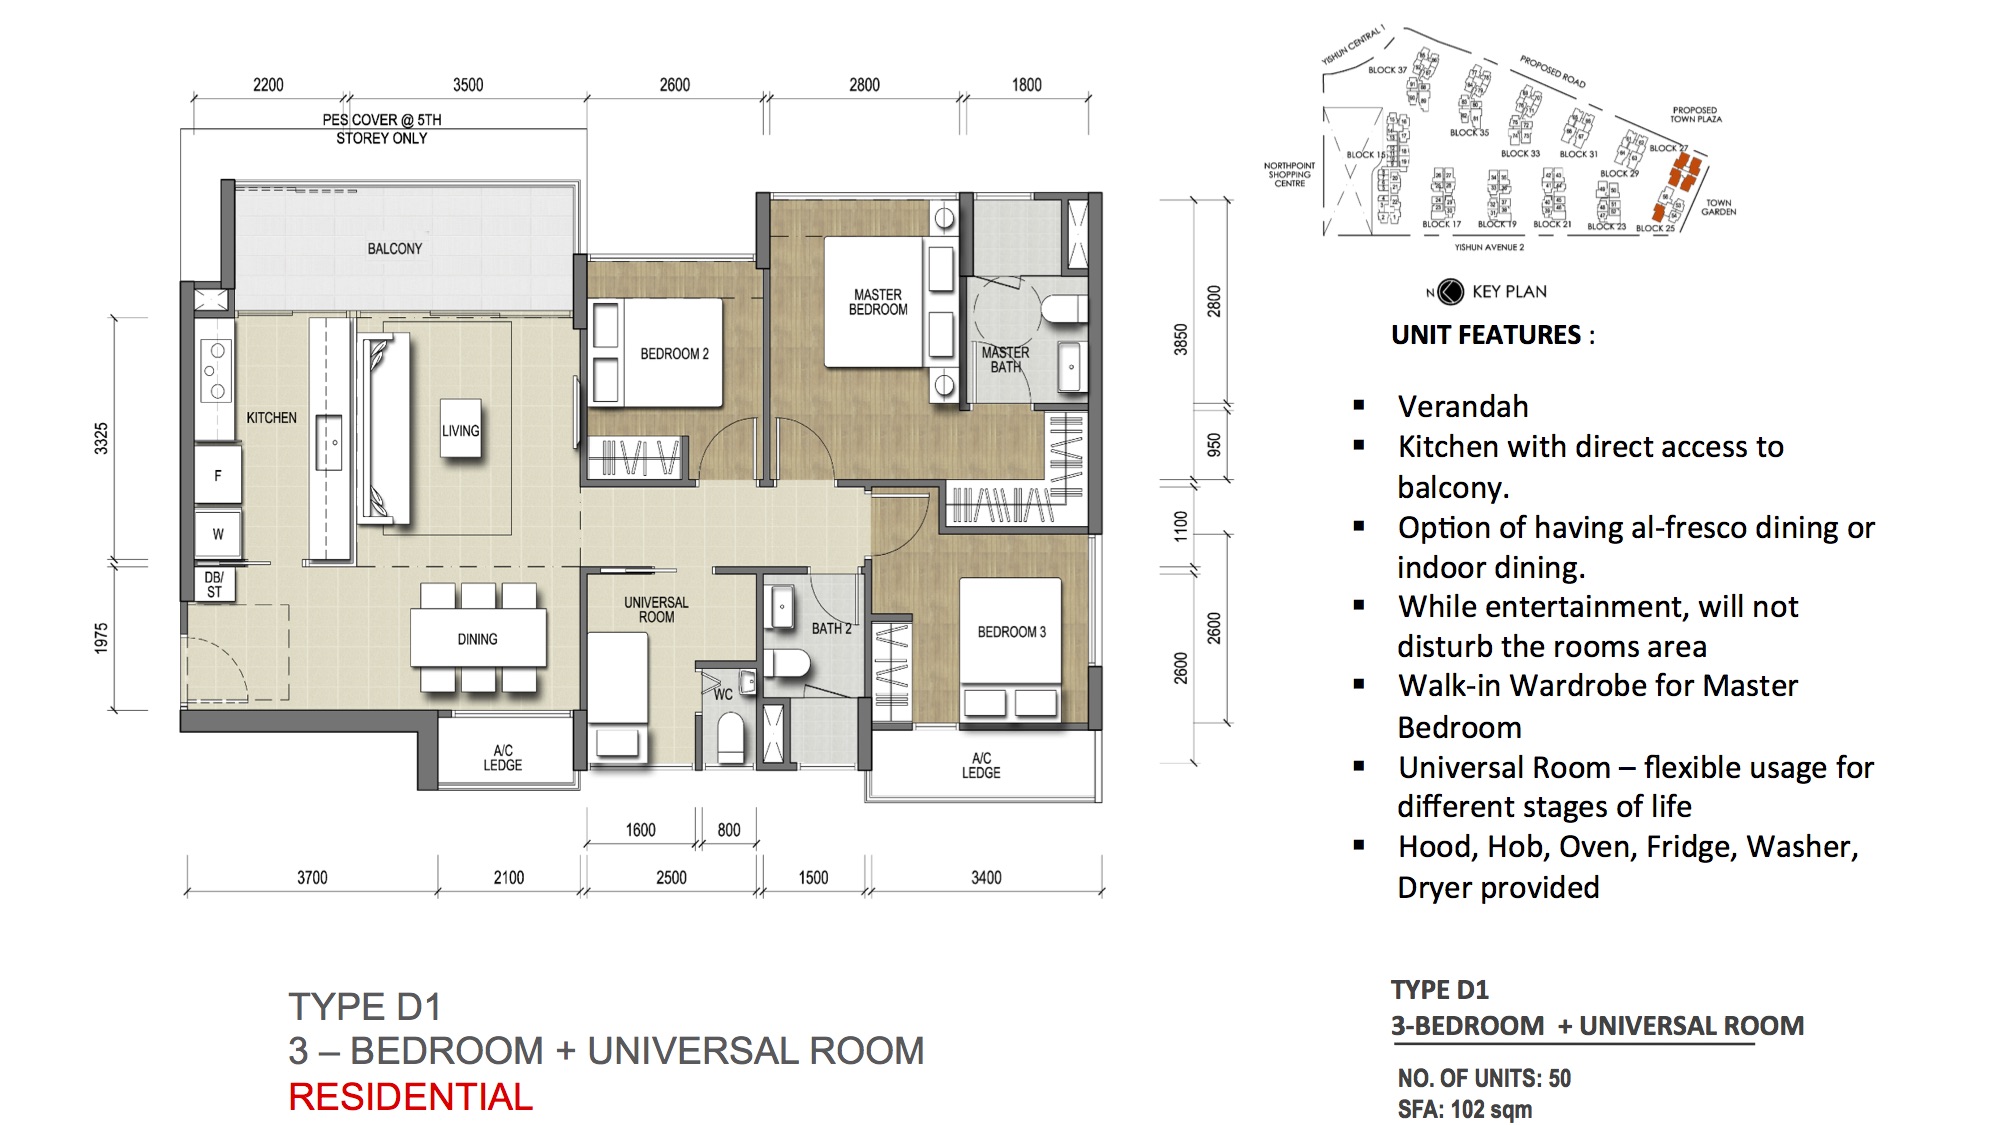 Type D1 - 3-Bedroom + Universal Room